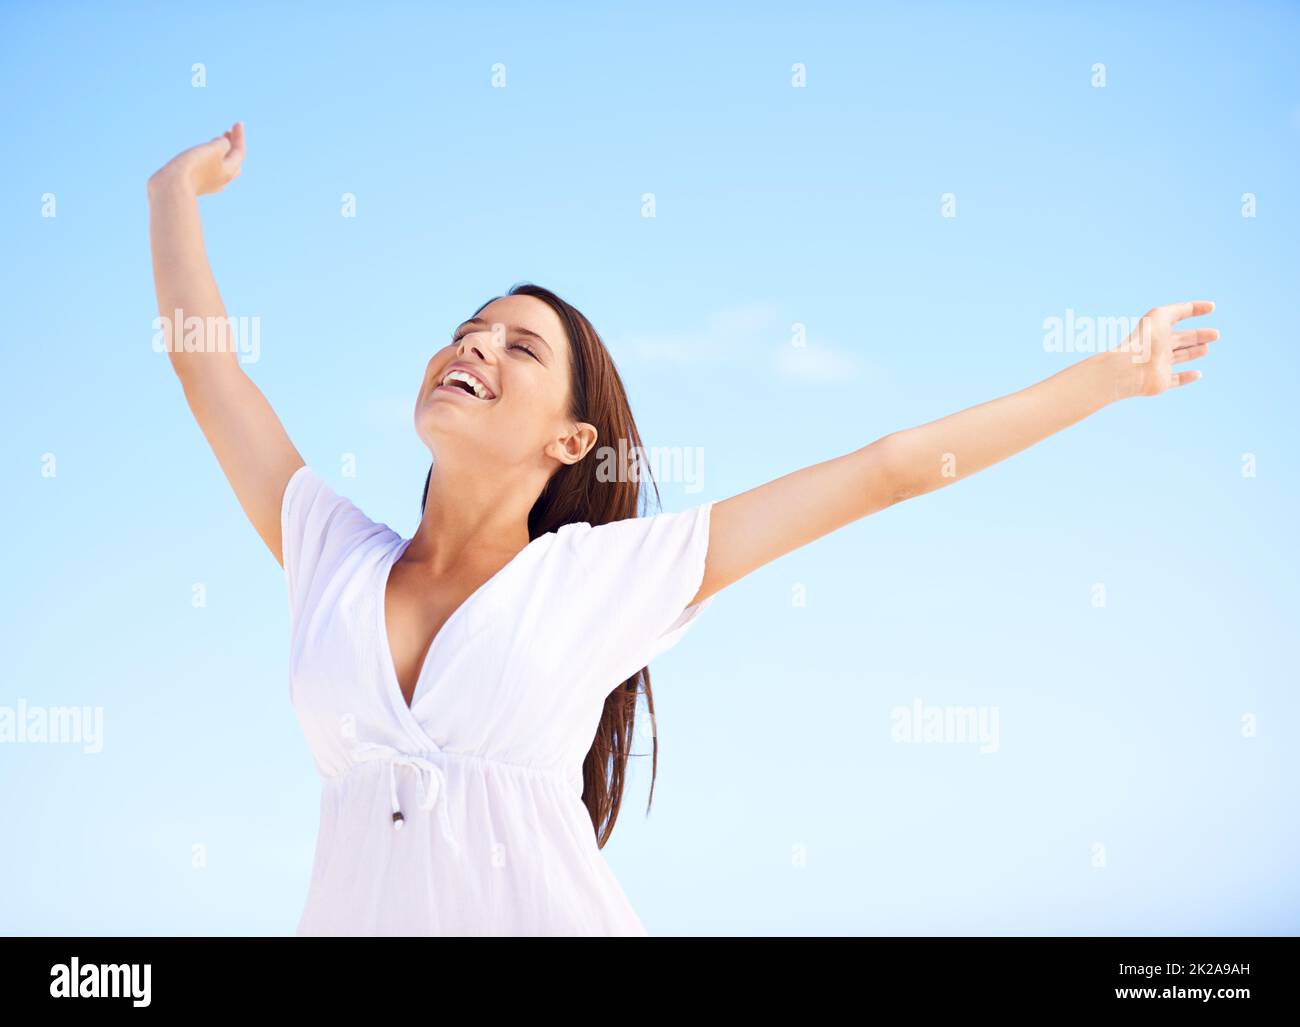 Freiheit gegen einen blauen Himmel. Eine unbeschwerte junge Frau, die mit ausgestreckten Armen vor einem blauen Himmel steht. Stockfoto